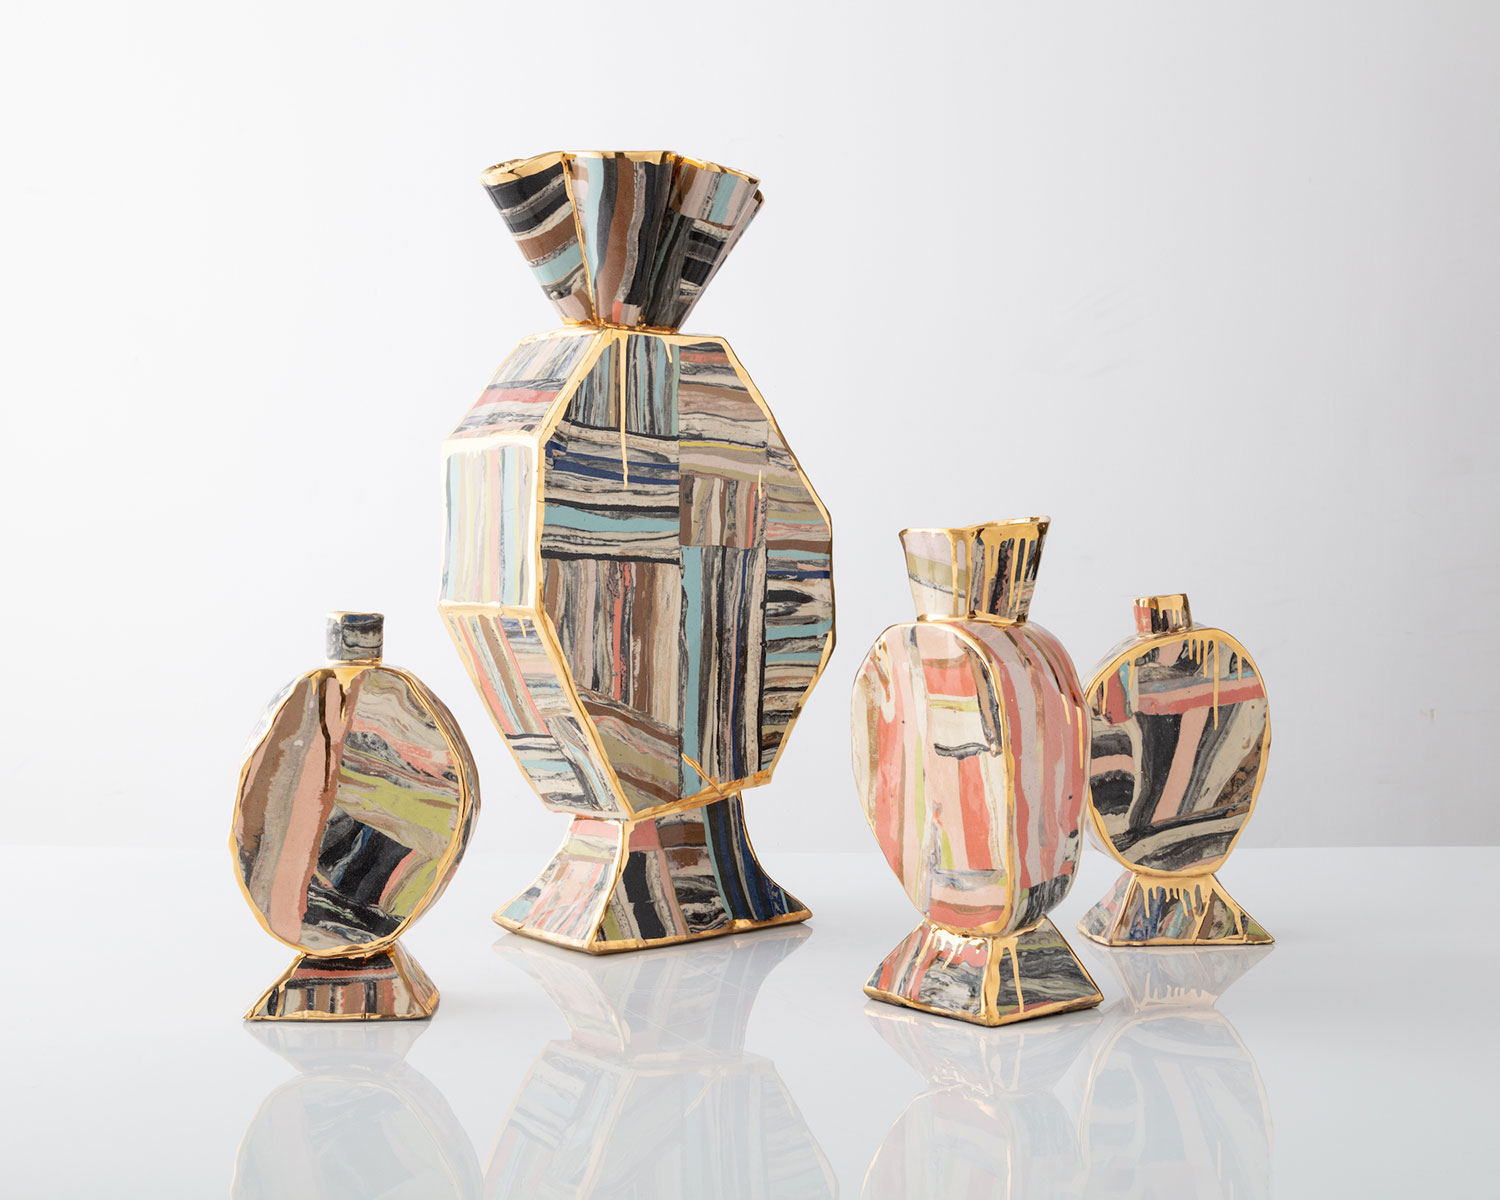 Katie Stout’s Slab Vases in glazed ceramic